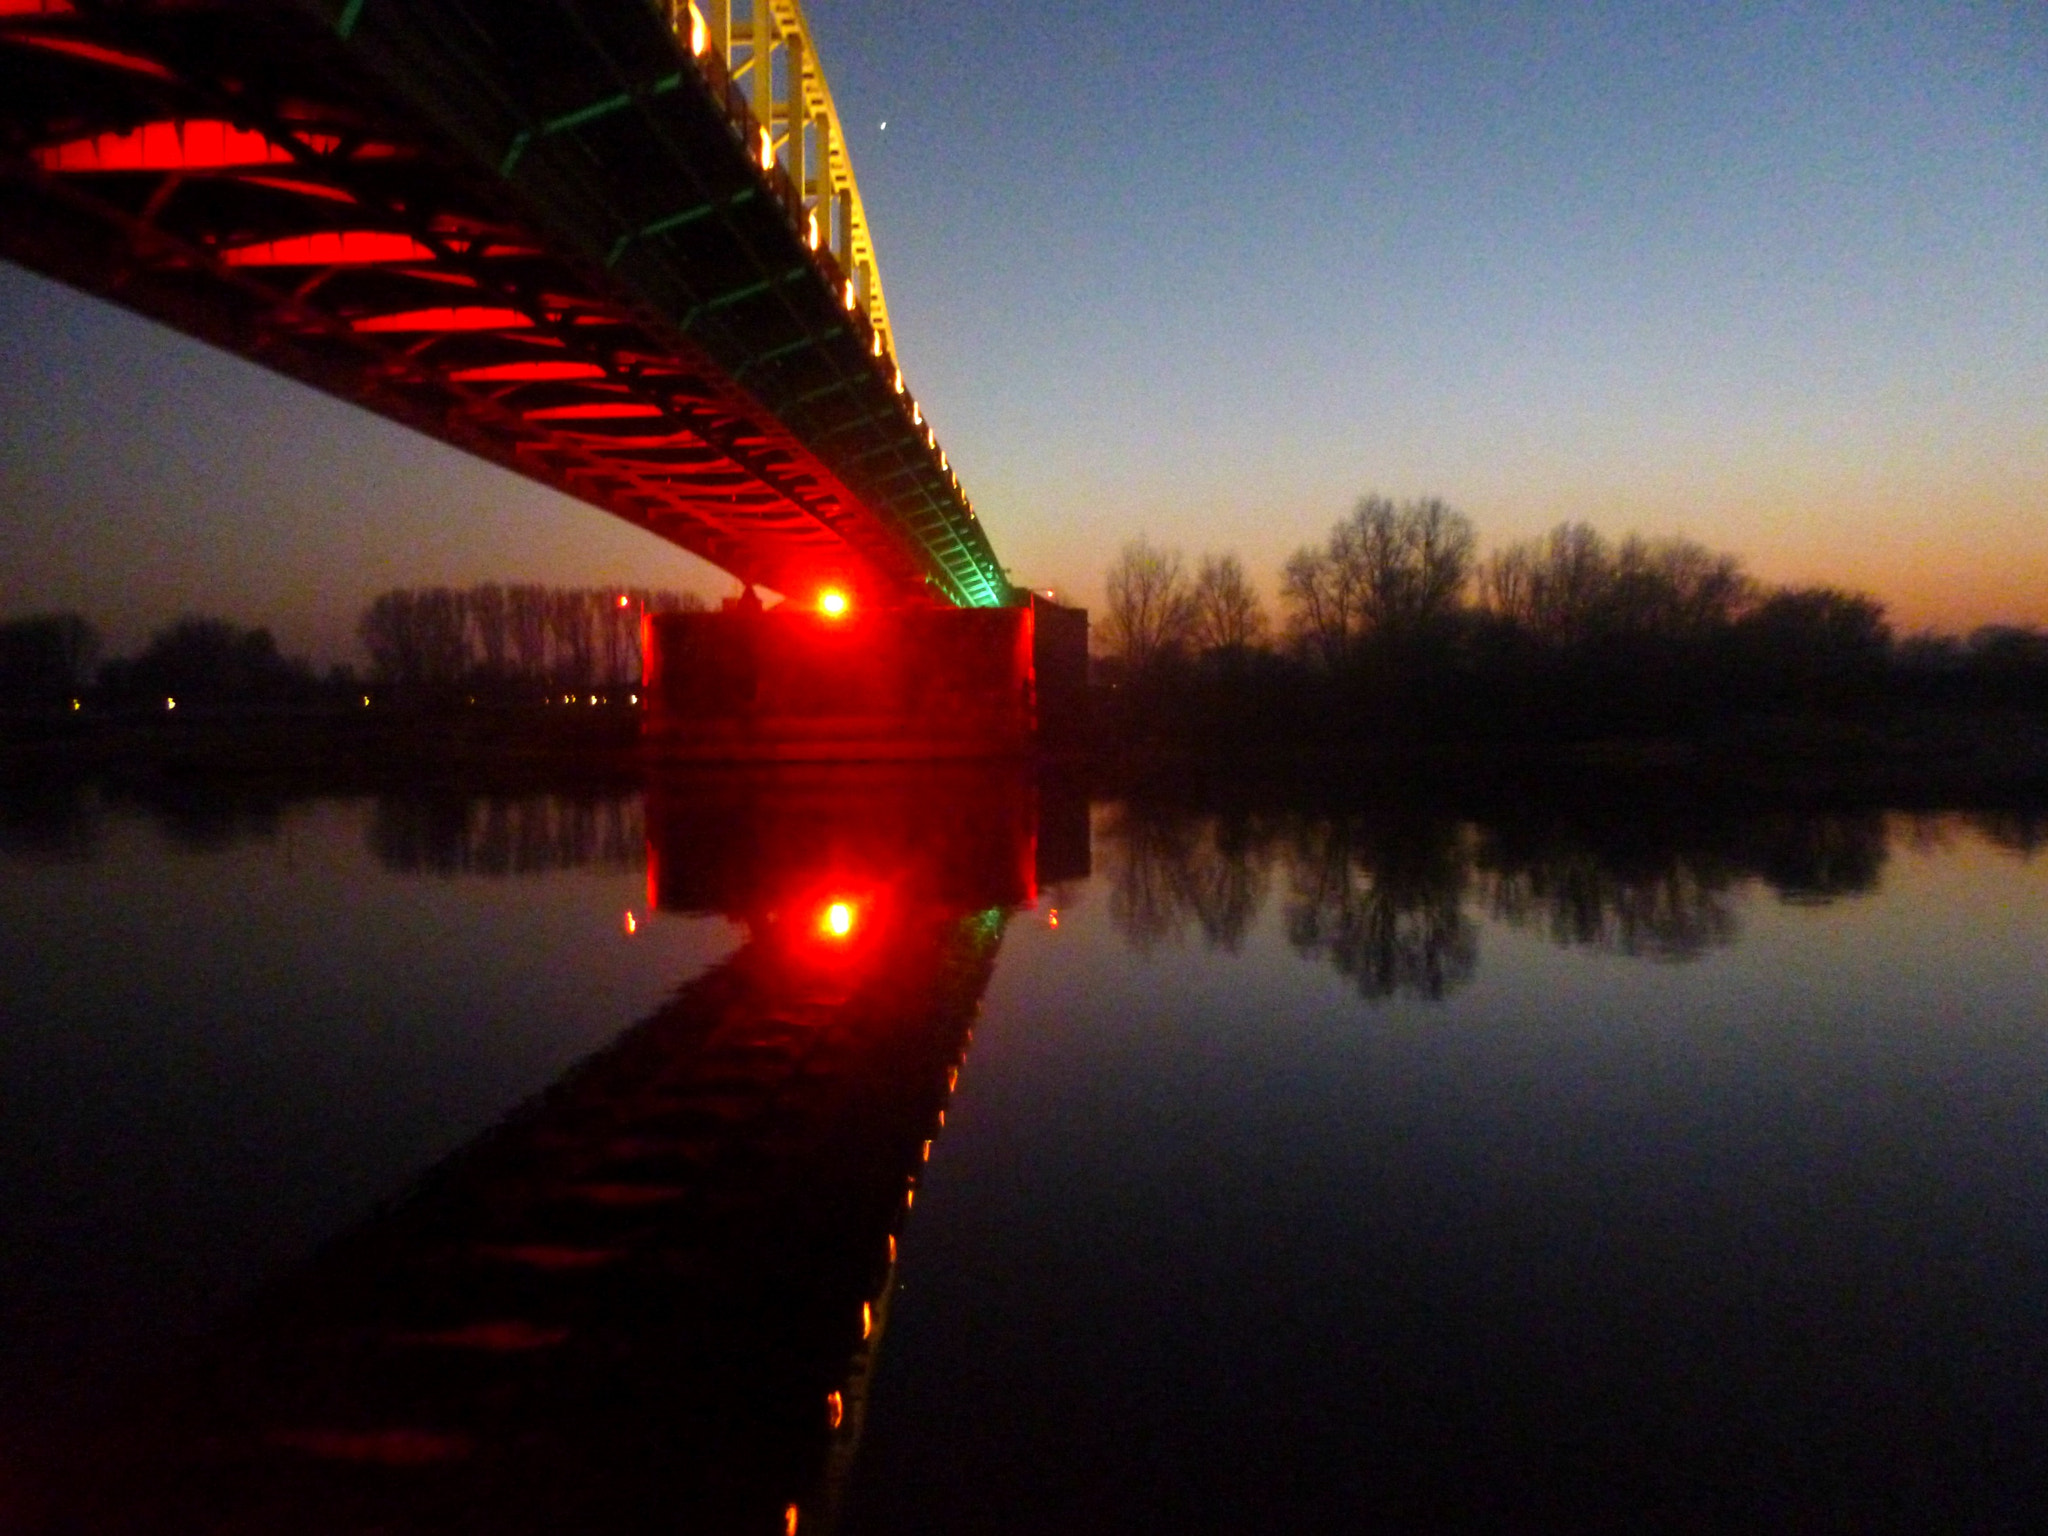 Panasonic DMC-SZ3 sample photo. Arnhem bridge photography